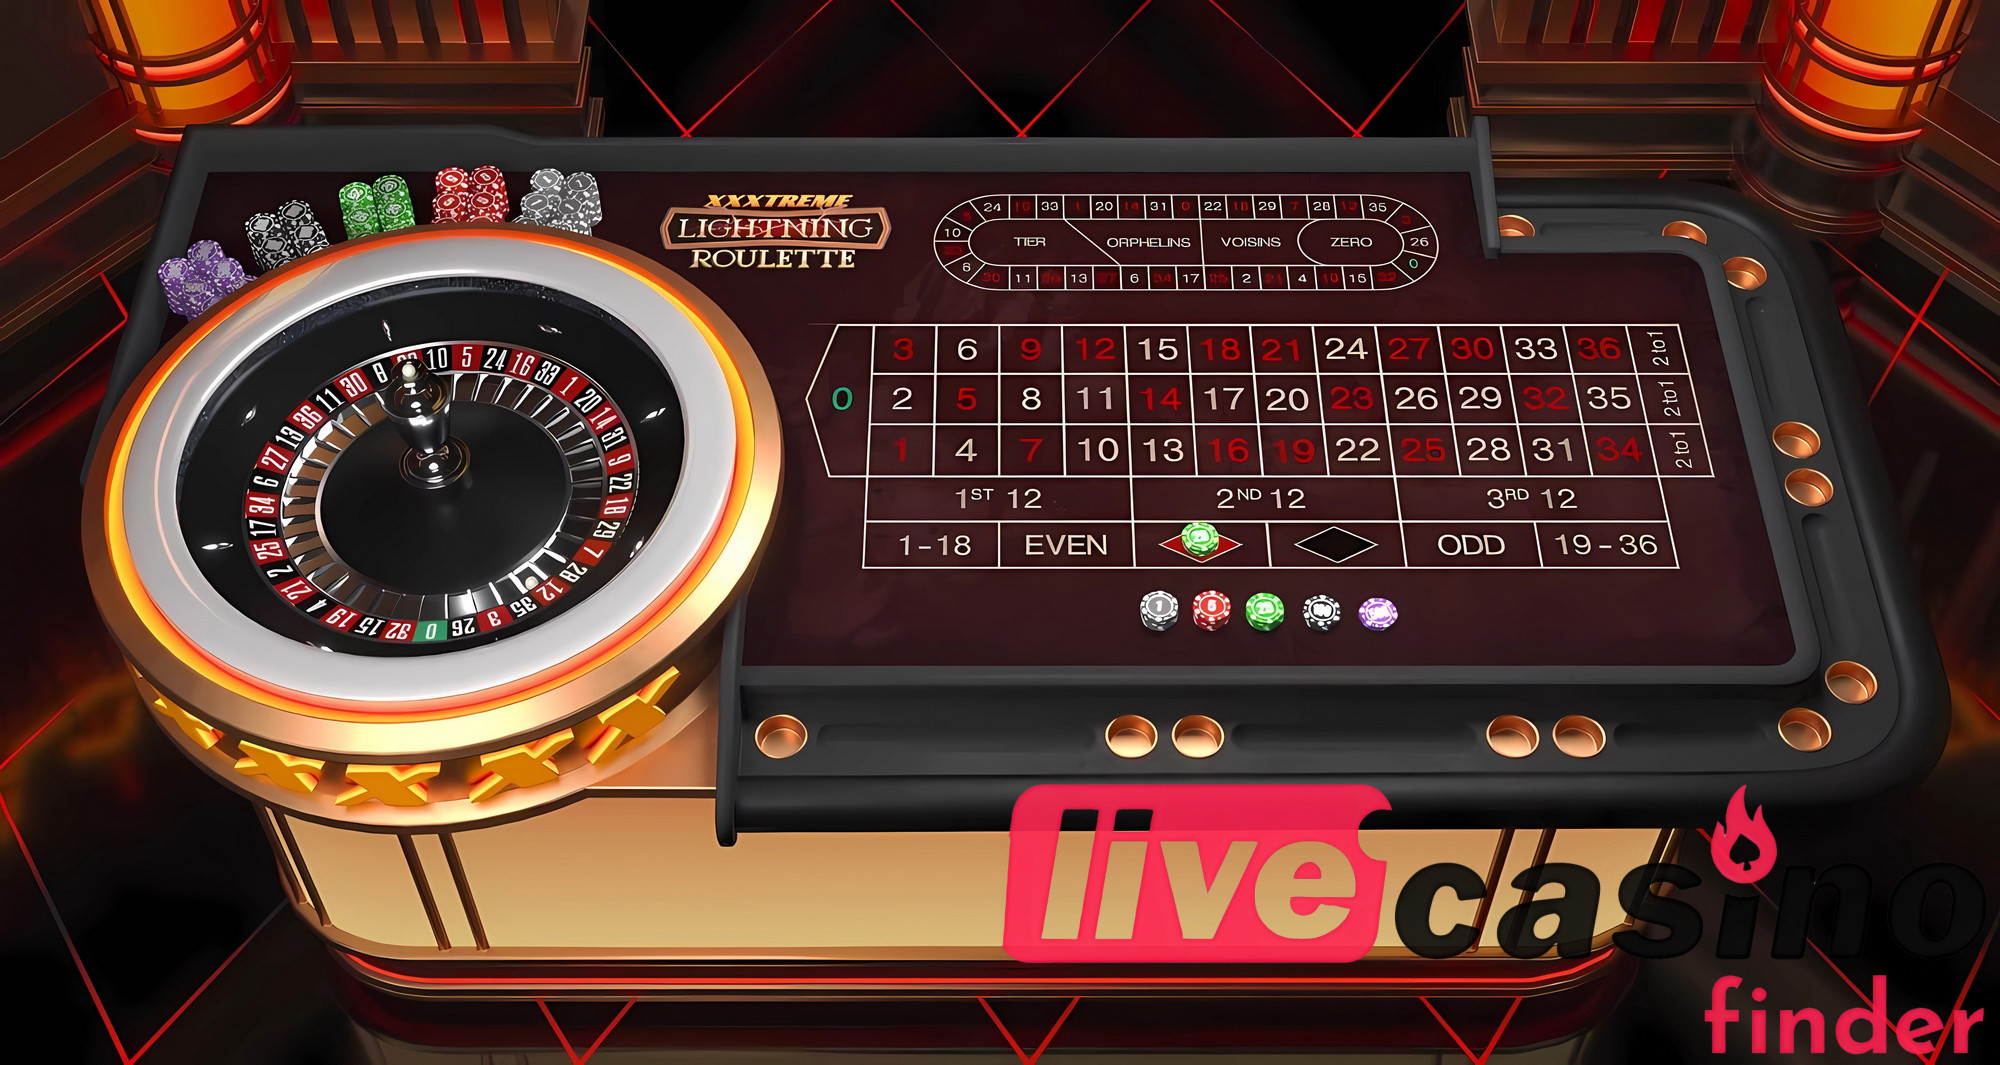 Live casinospel XXXtreme Lightning Roulette.